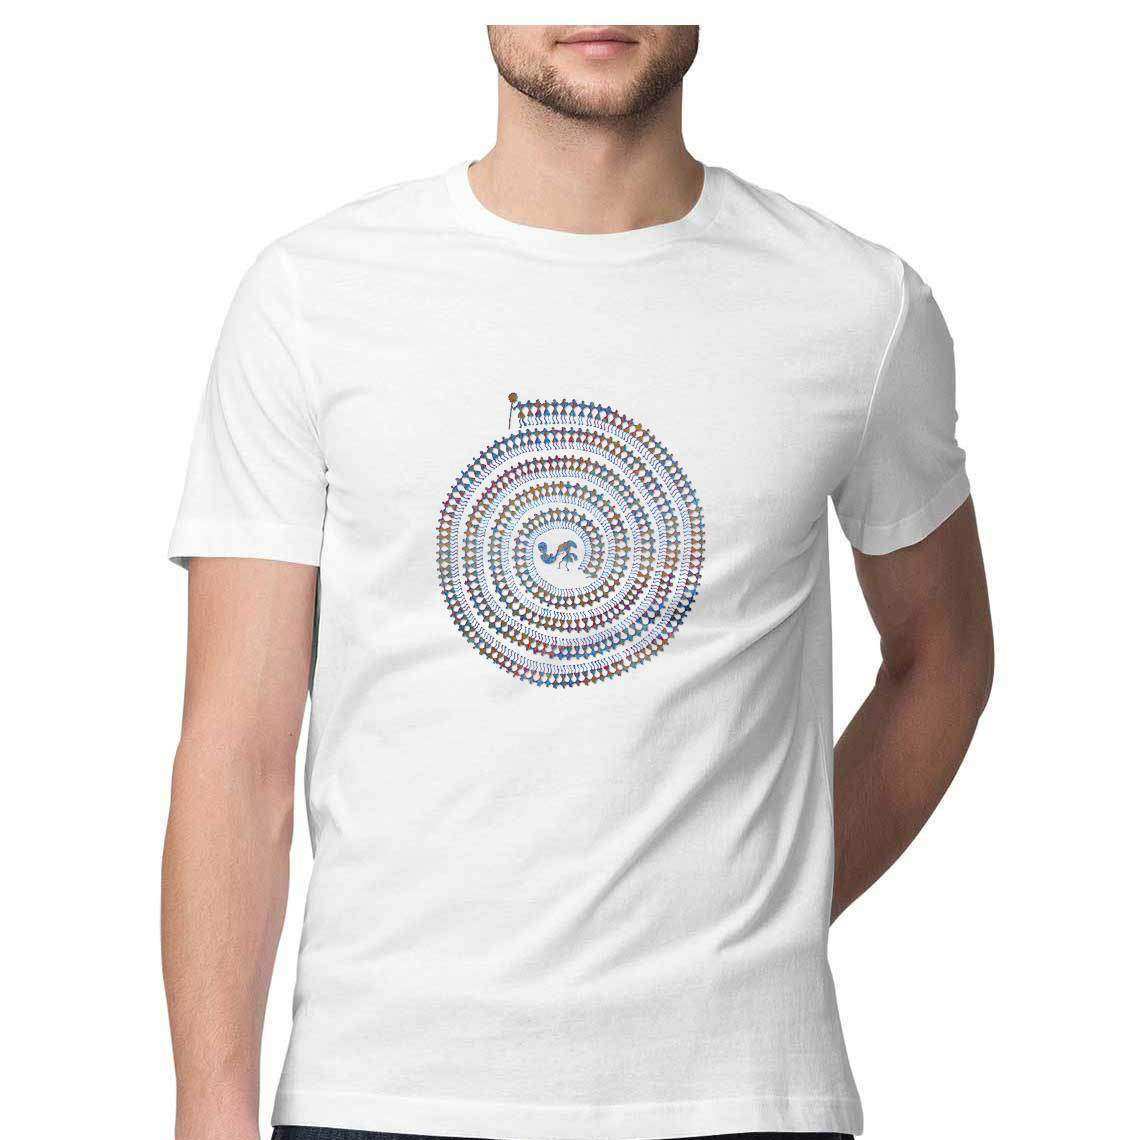 Warli Tribal Swirl Graphic Men's T-Shirt - CBD Store India